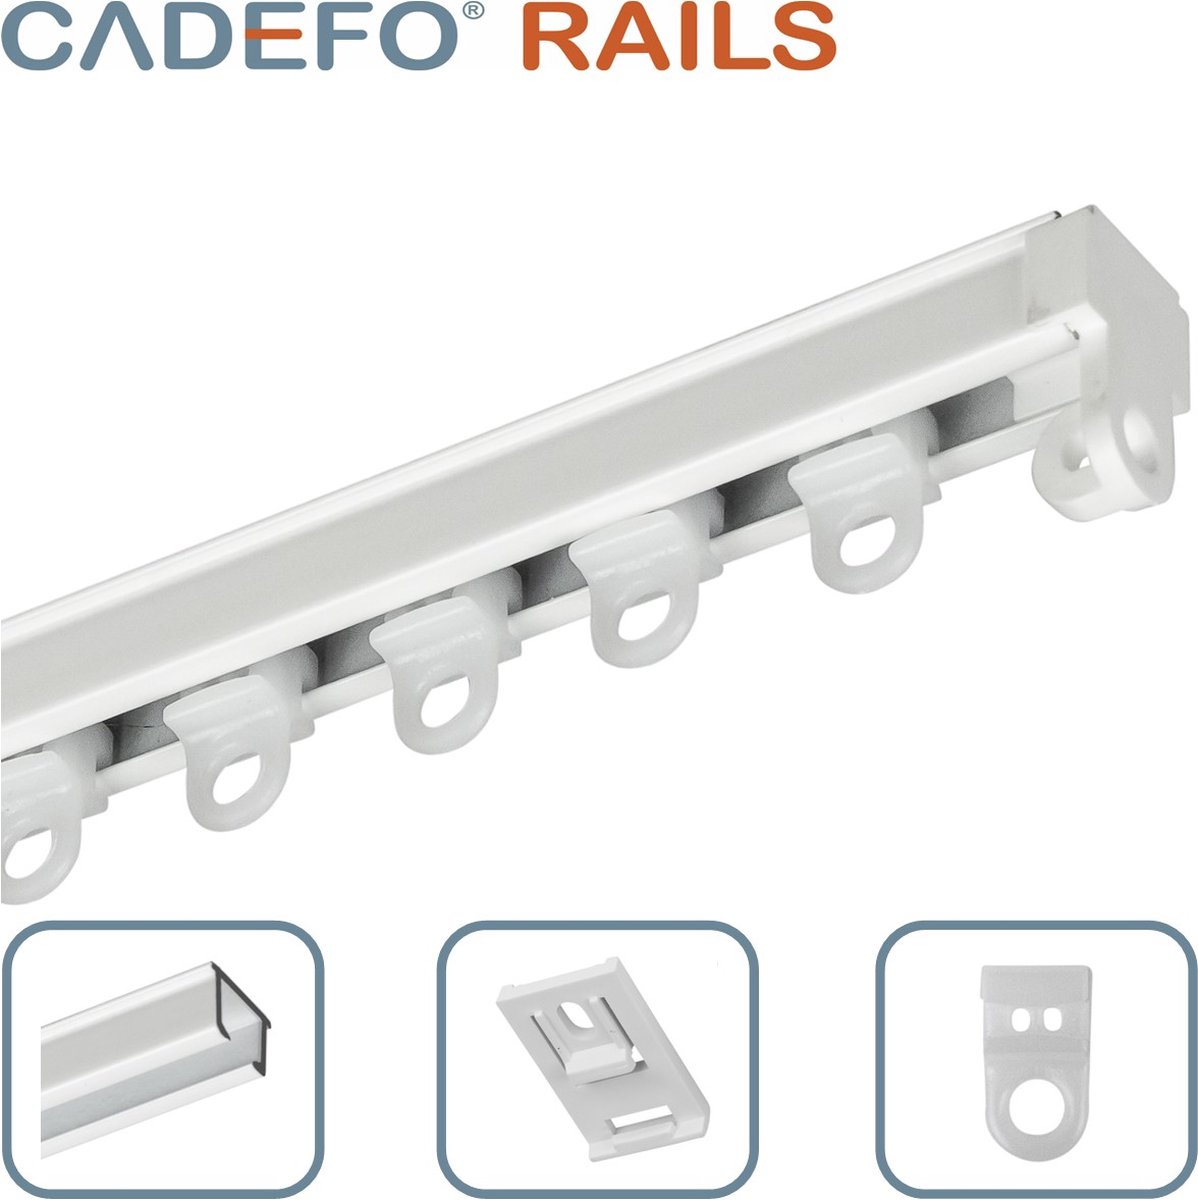 CADEFO RAILS (101 - 150 cm) Gordijnrails - Compleet op maat! - UIT 1 STUK - Leverbaar tot 6 meter - Plafondbevestiging - Lengte 118 cm